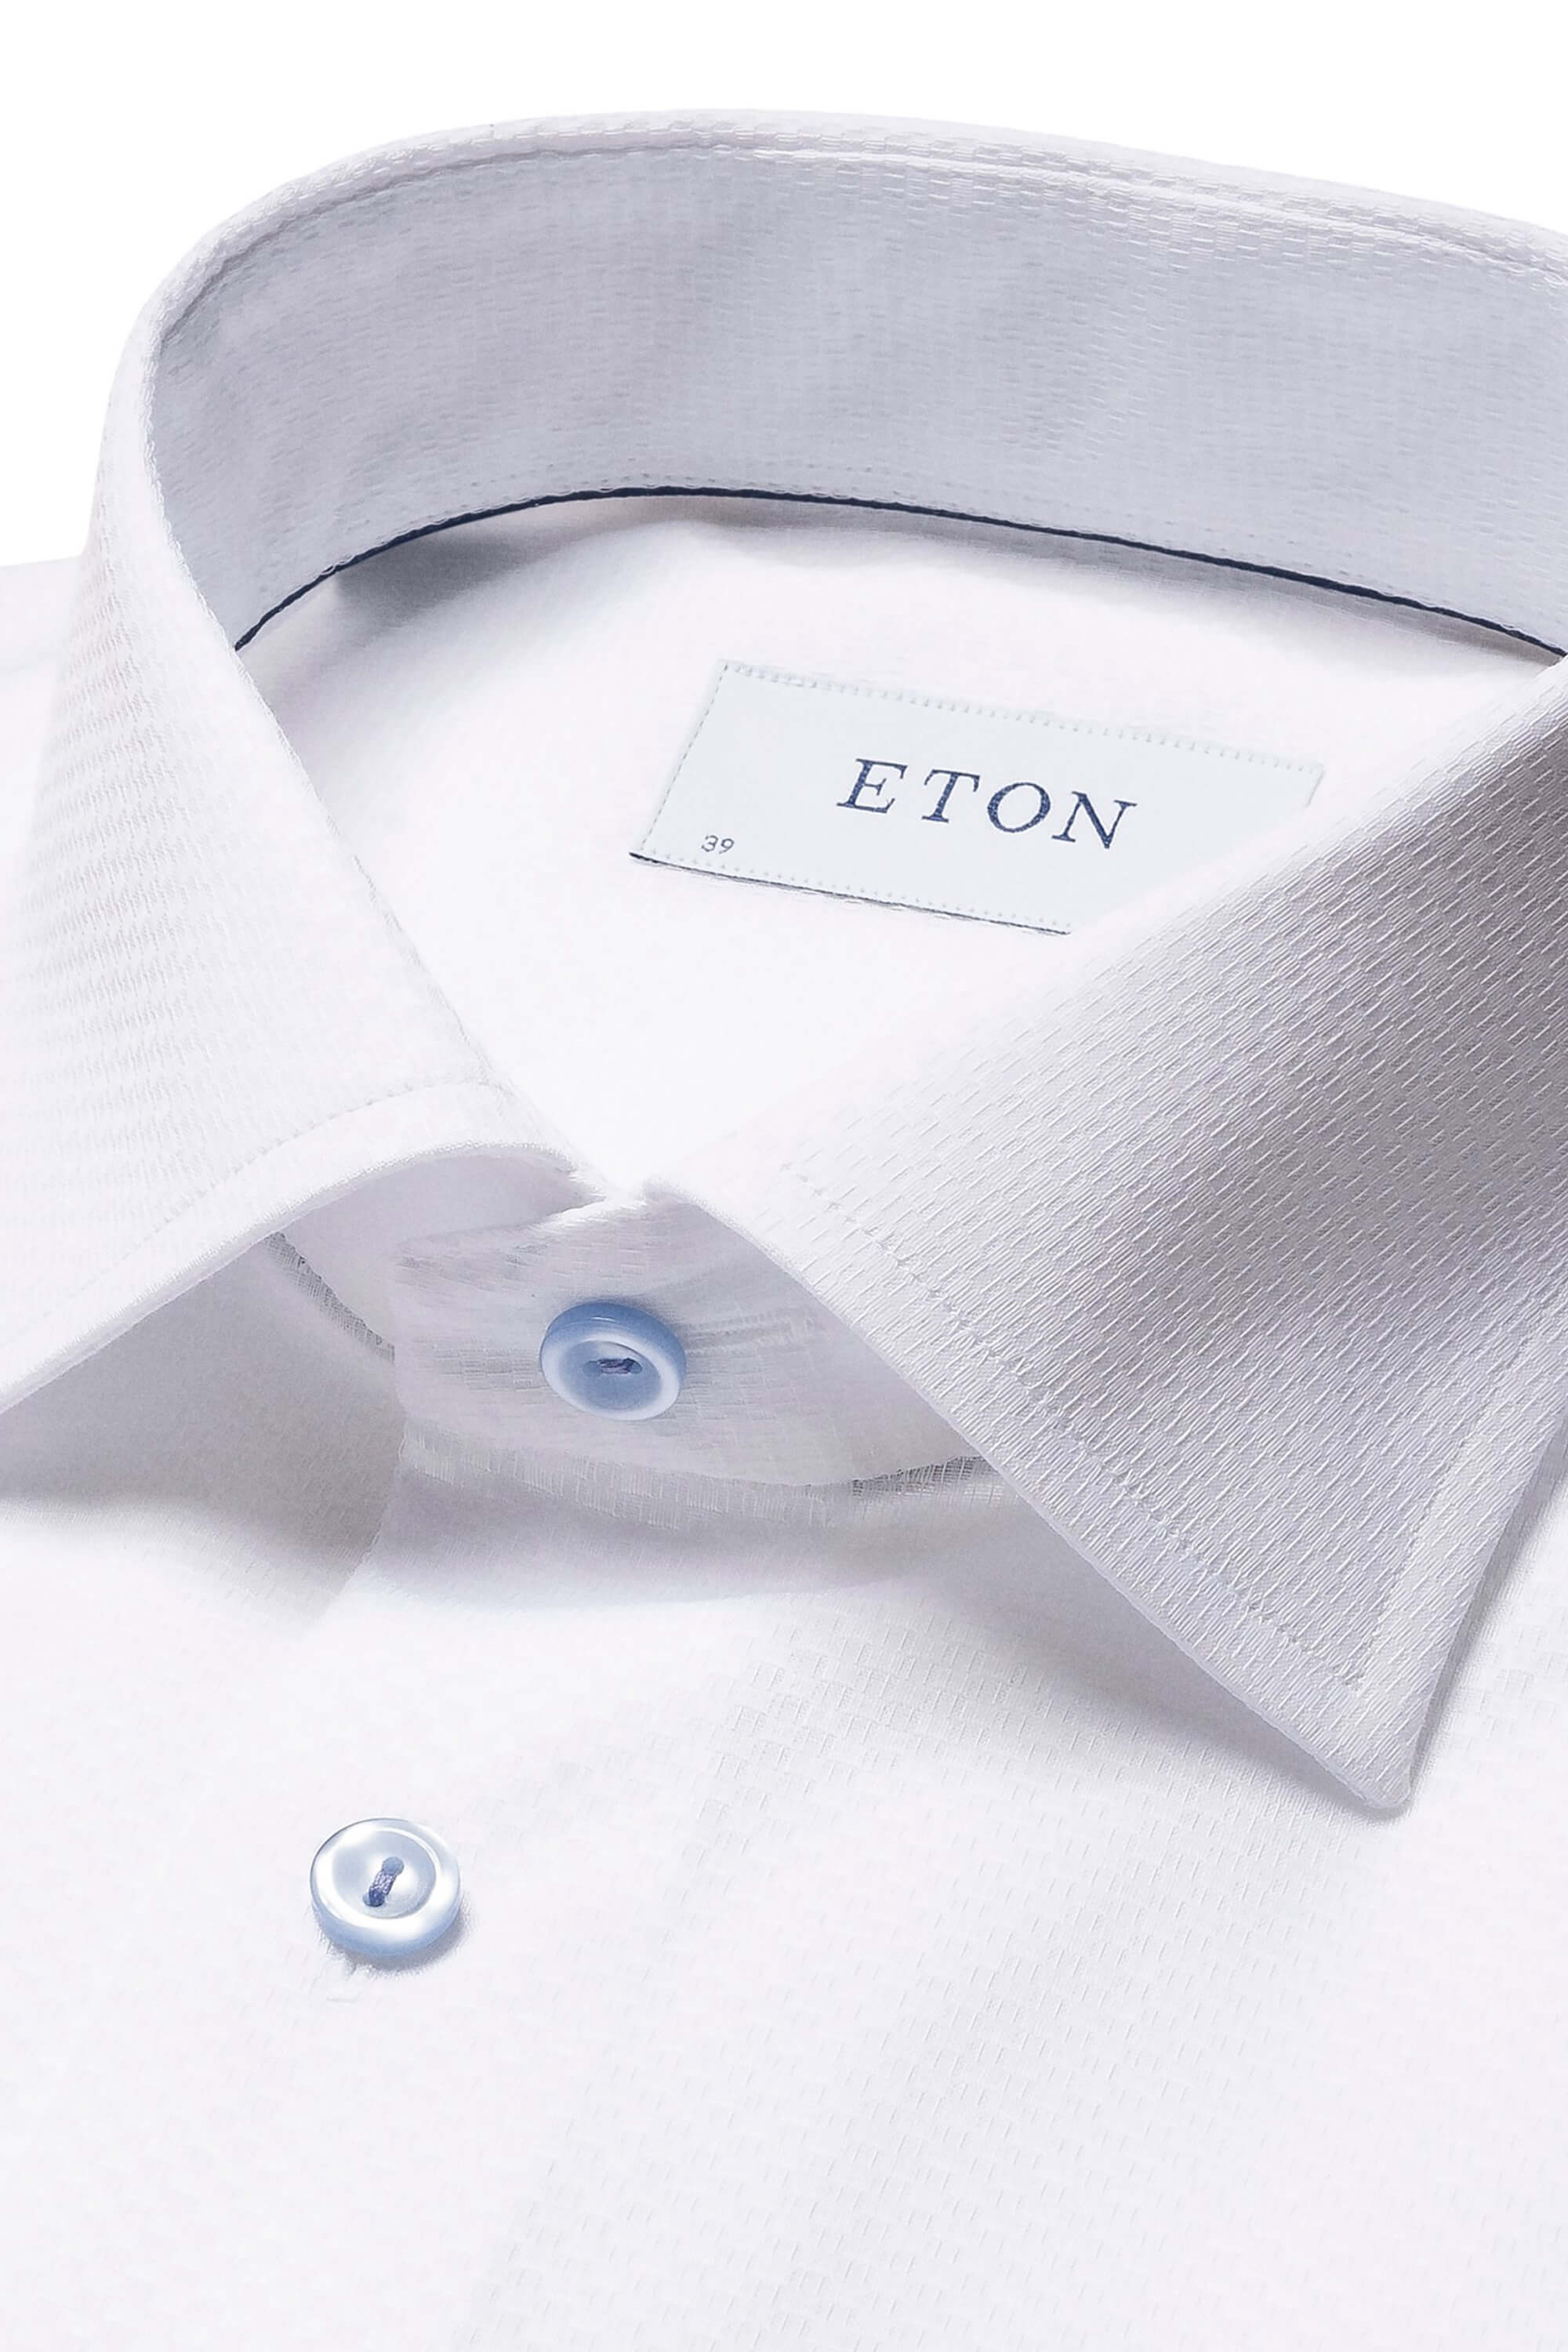 Eton White Dobby Shirt